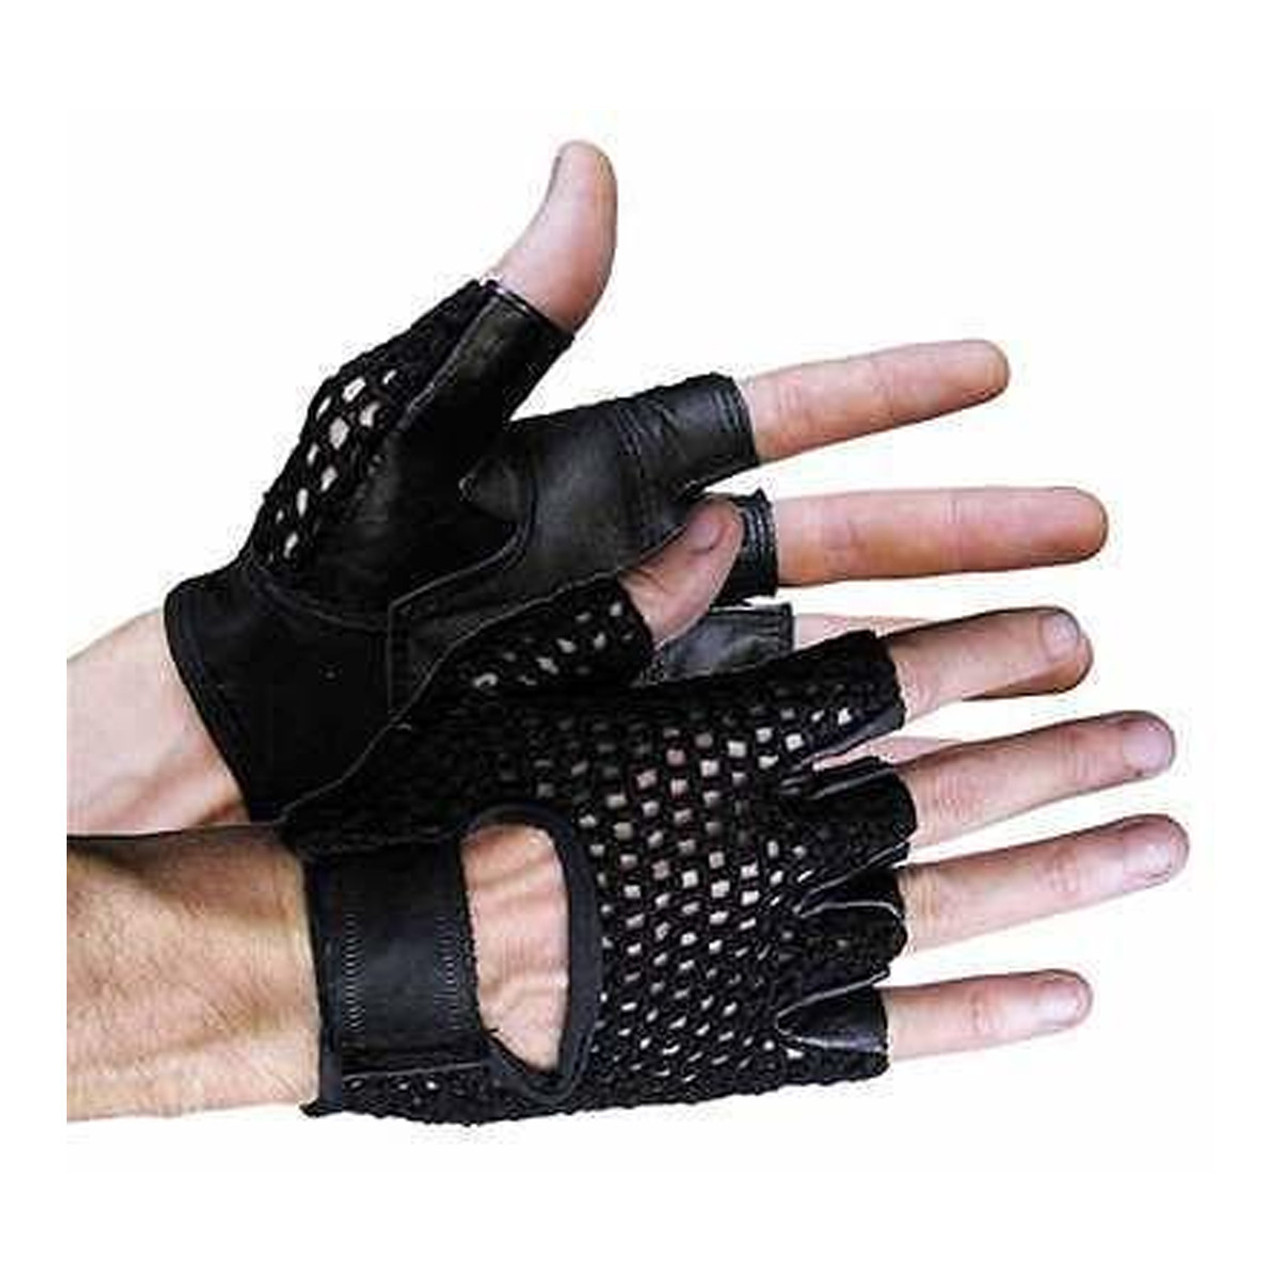 mens leather fingerless gloves